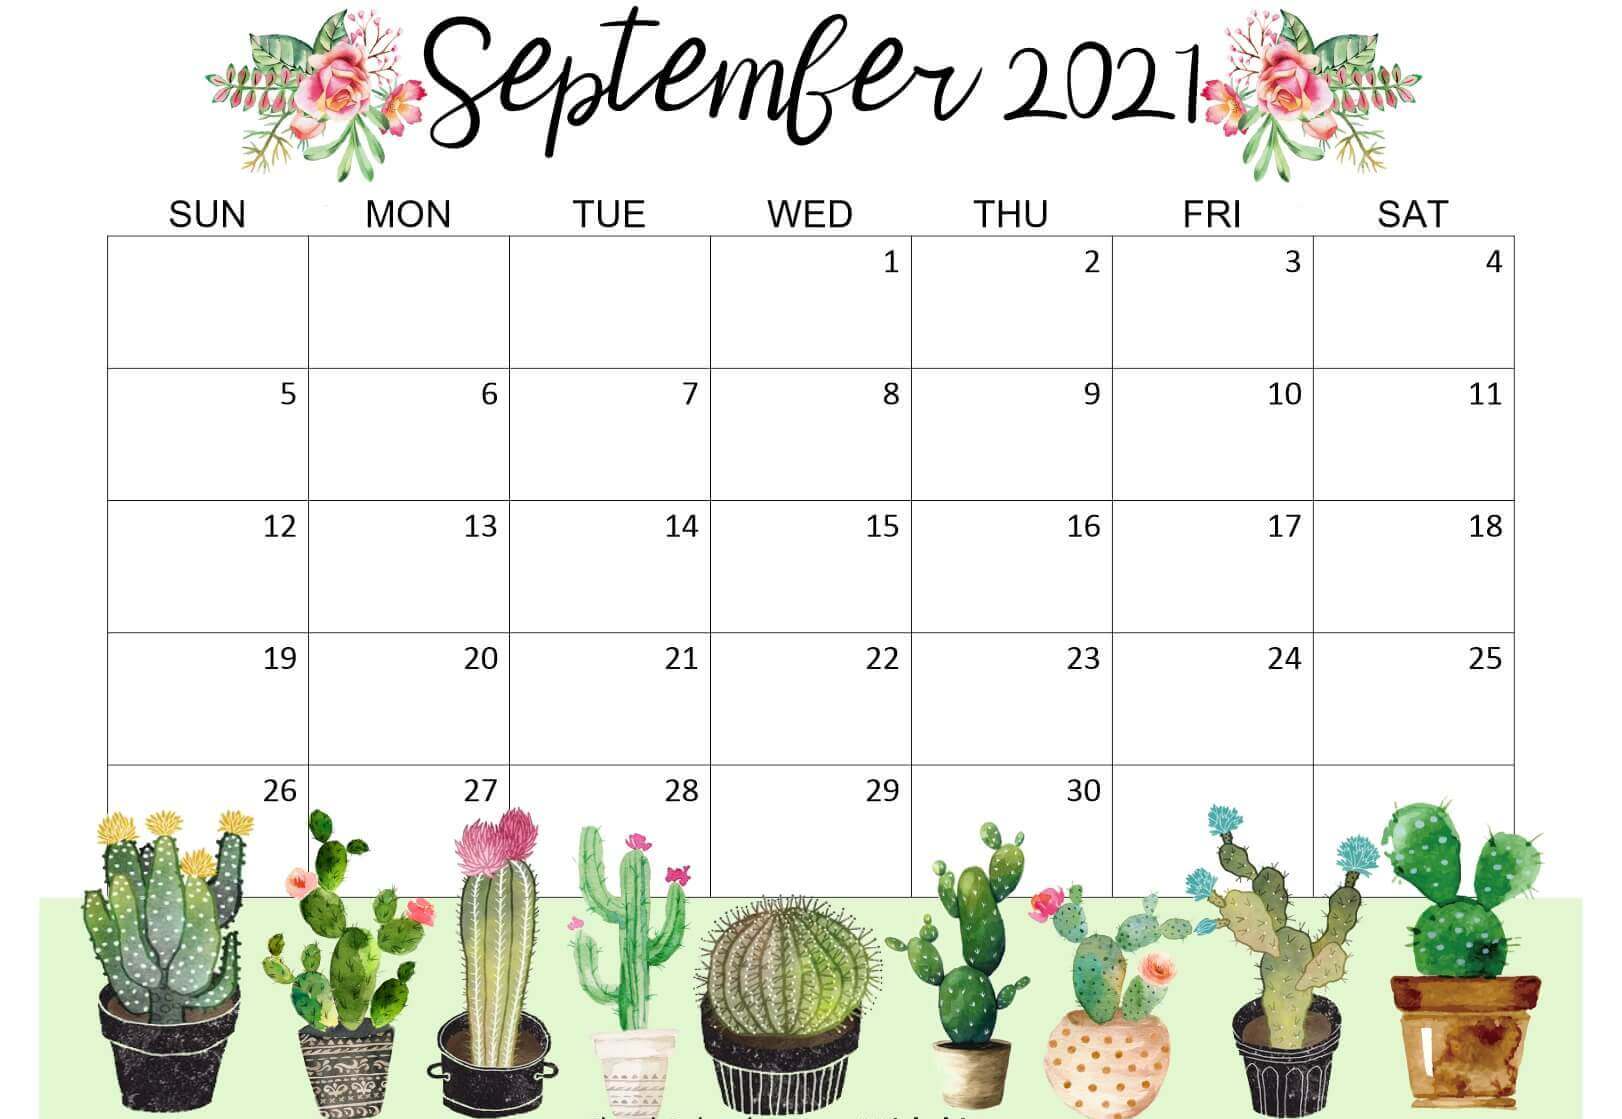 September 2021 Cute Calendar